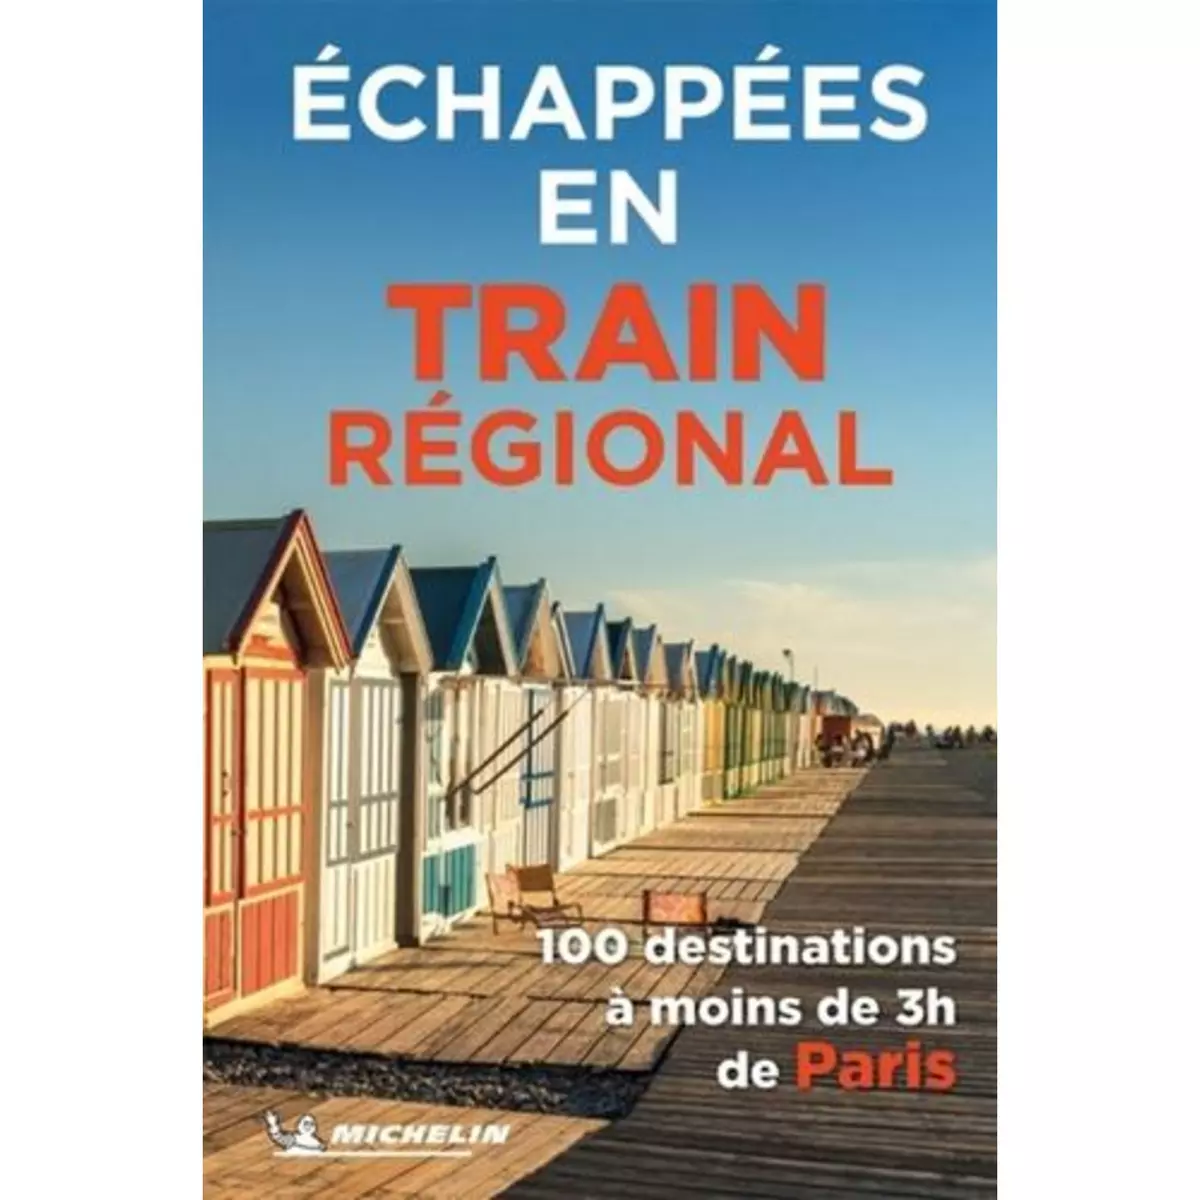  ECHAPPEES EN TRAIN REGIONAL, Michelin